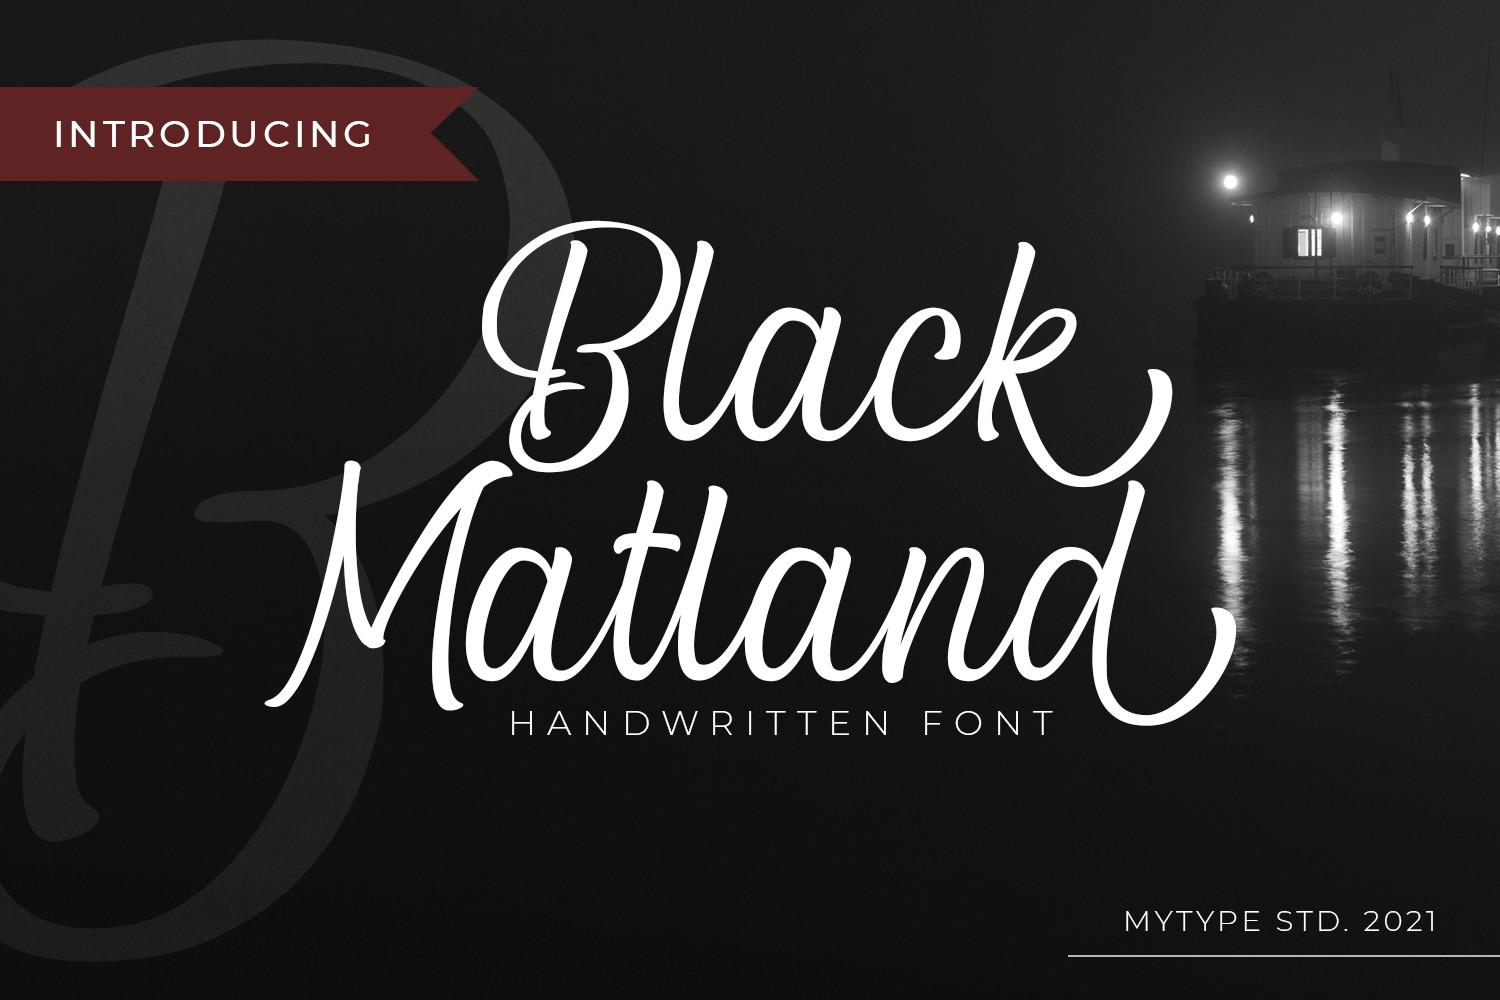 Blcak Matland Font